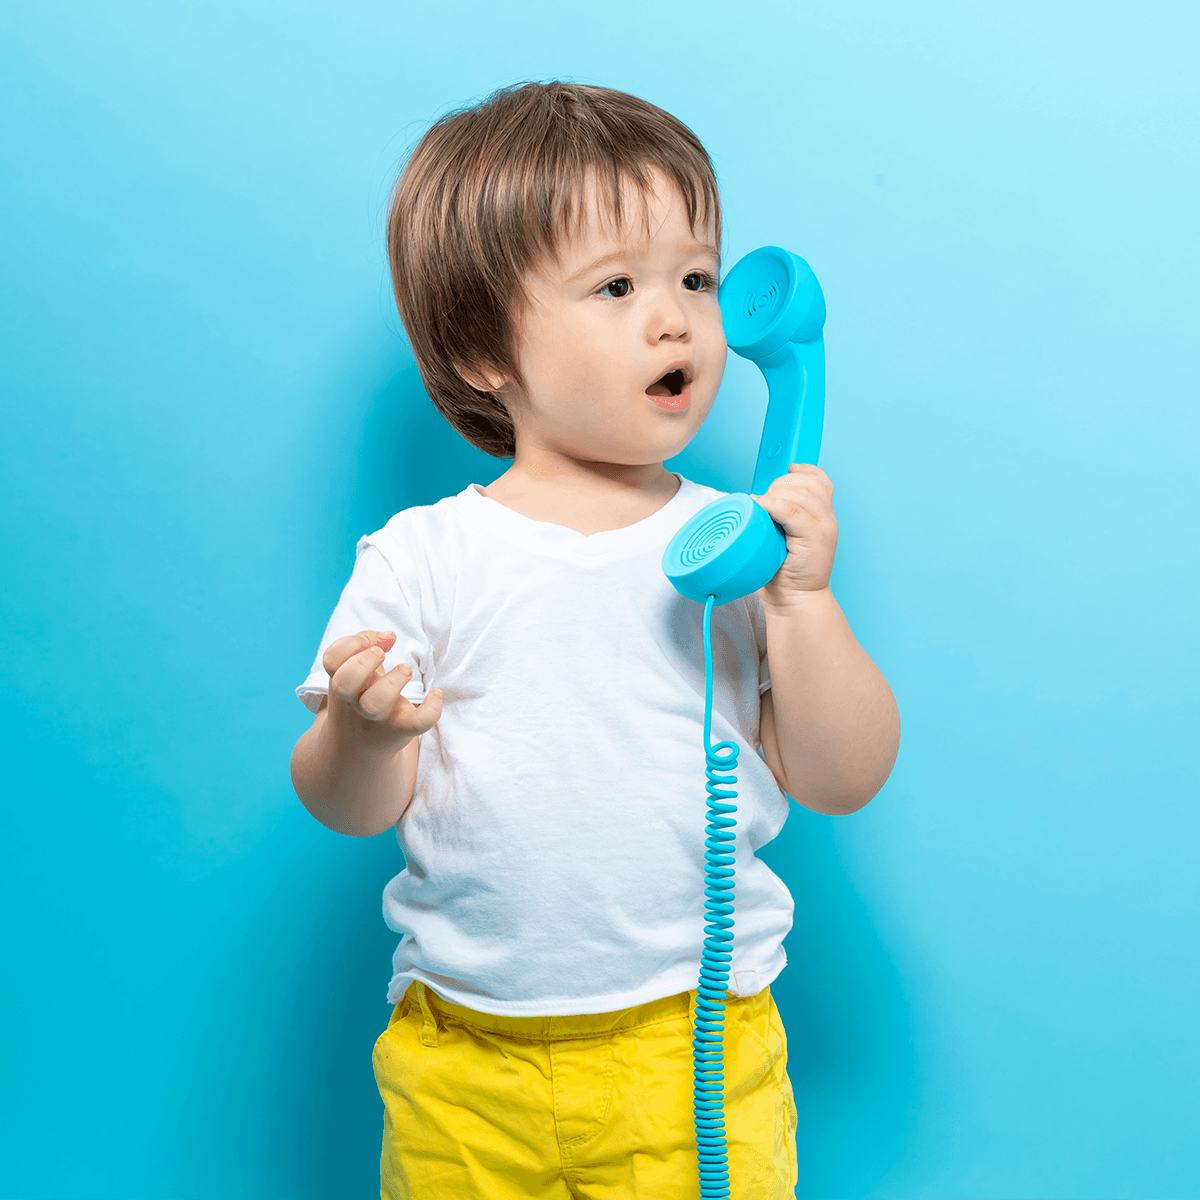 Mon enfant de 2 ans a-t-il des difficultés de langage? - Les Jeux de BriBri